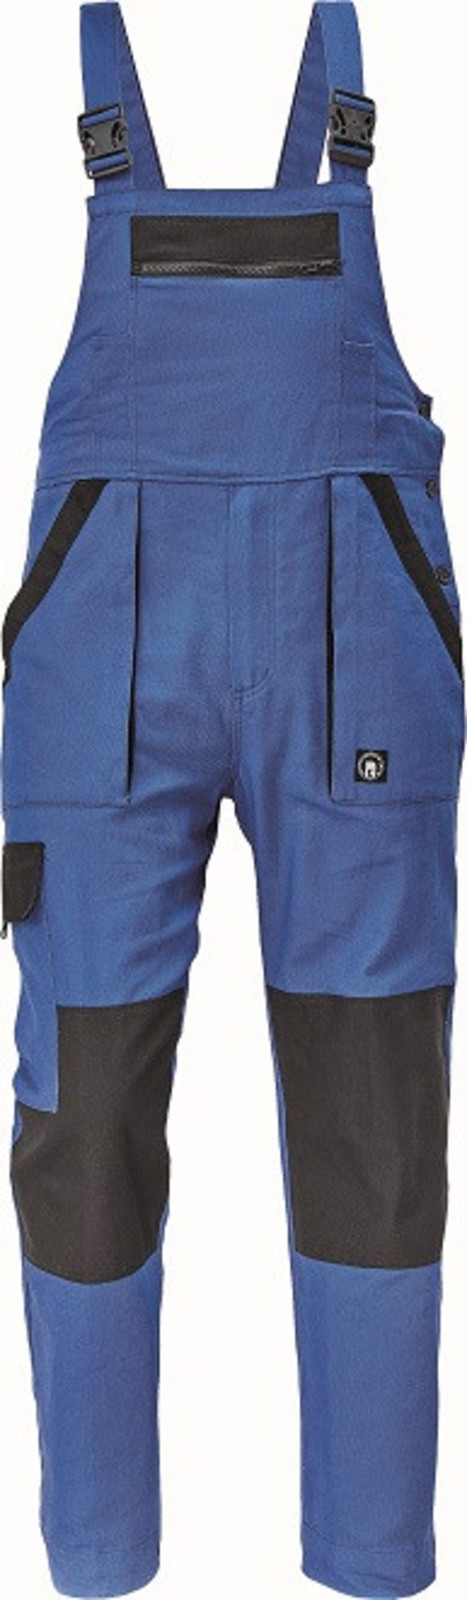 Bavlnené montérky na traky Cerva Max Neo pánske - veľkosť: 60, farba: modrá